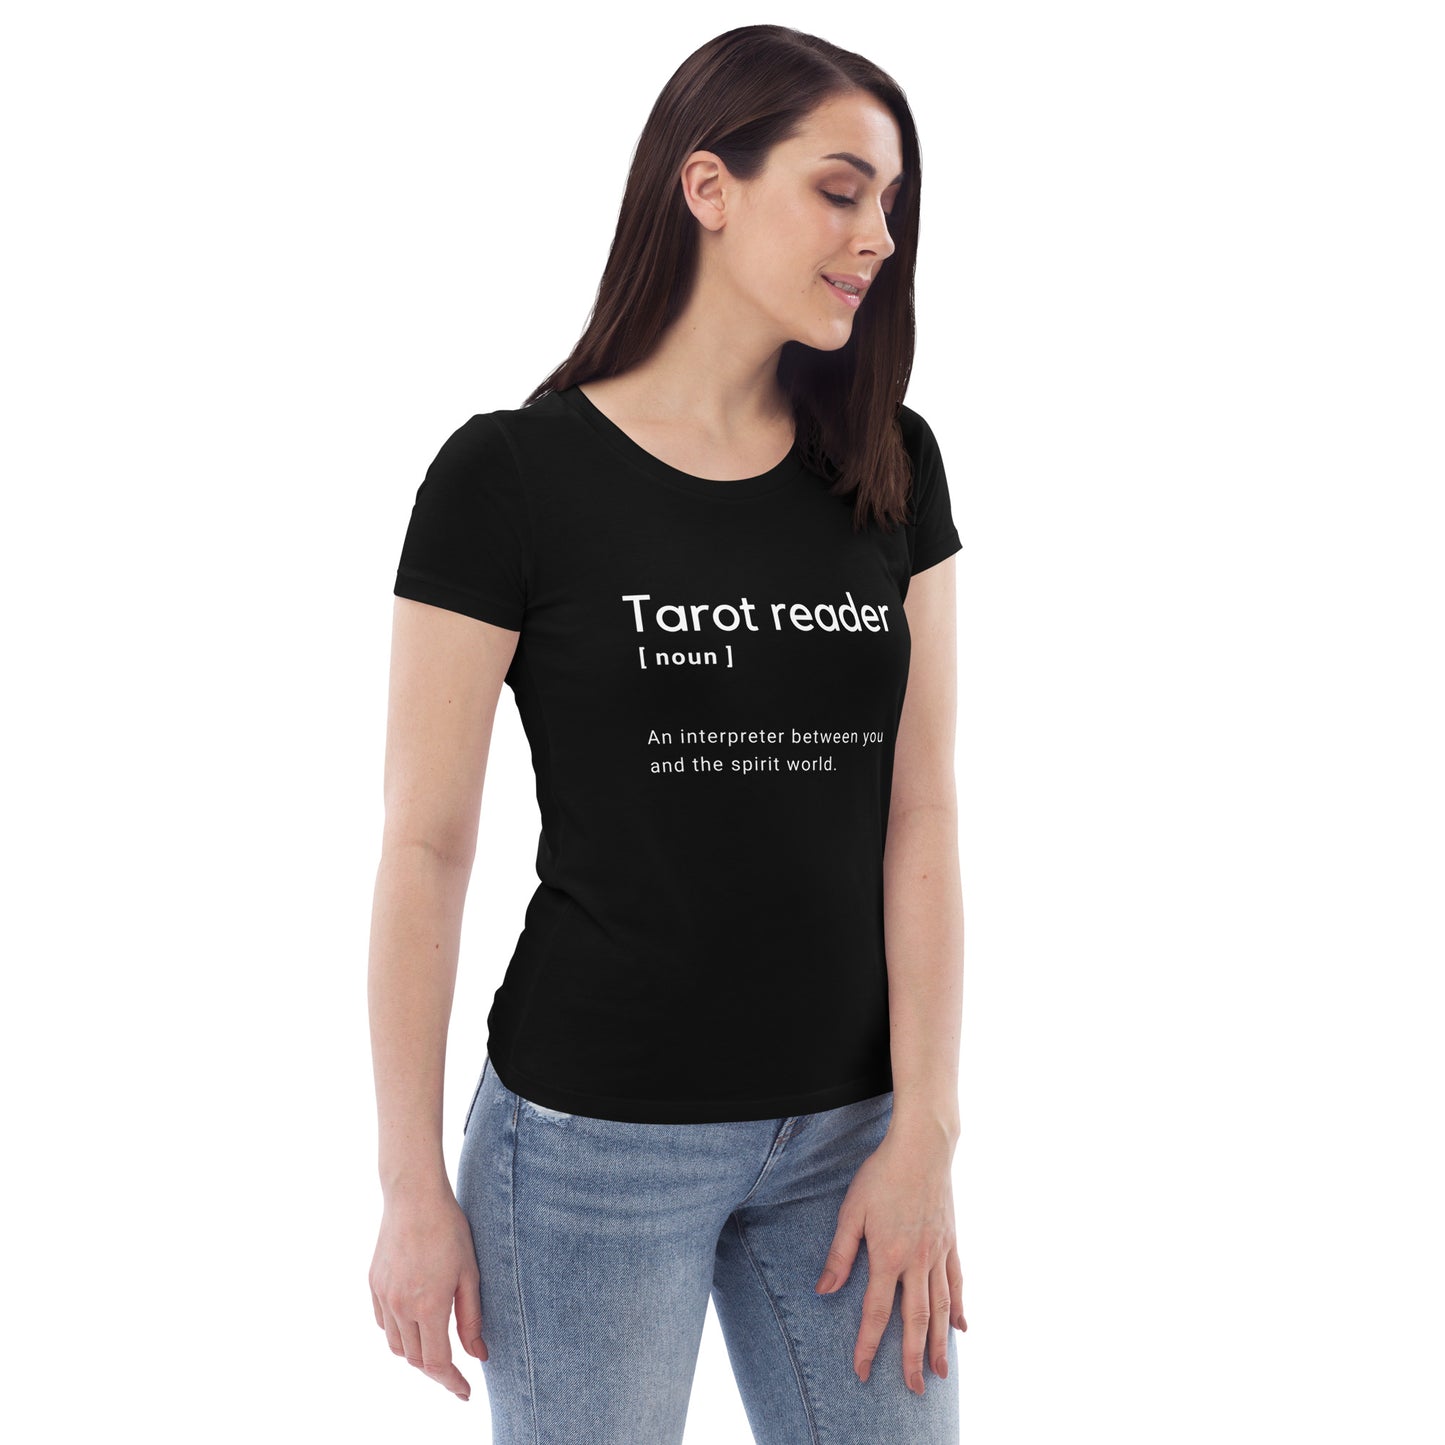 Tarot reader t-shirt